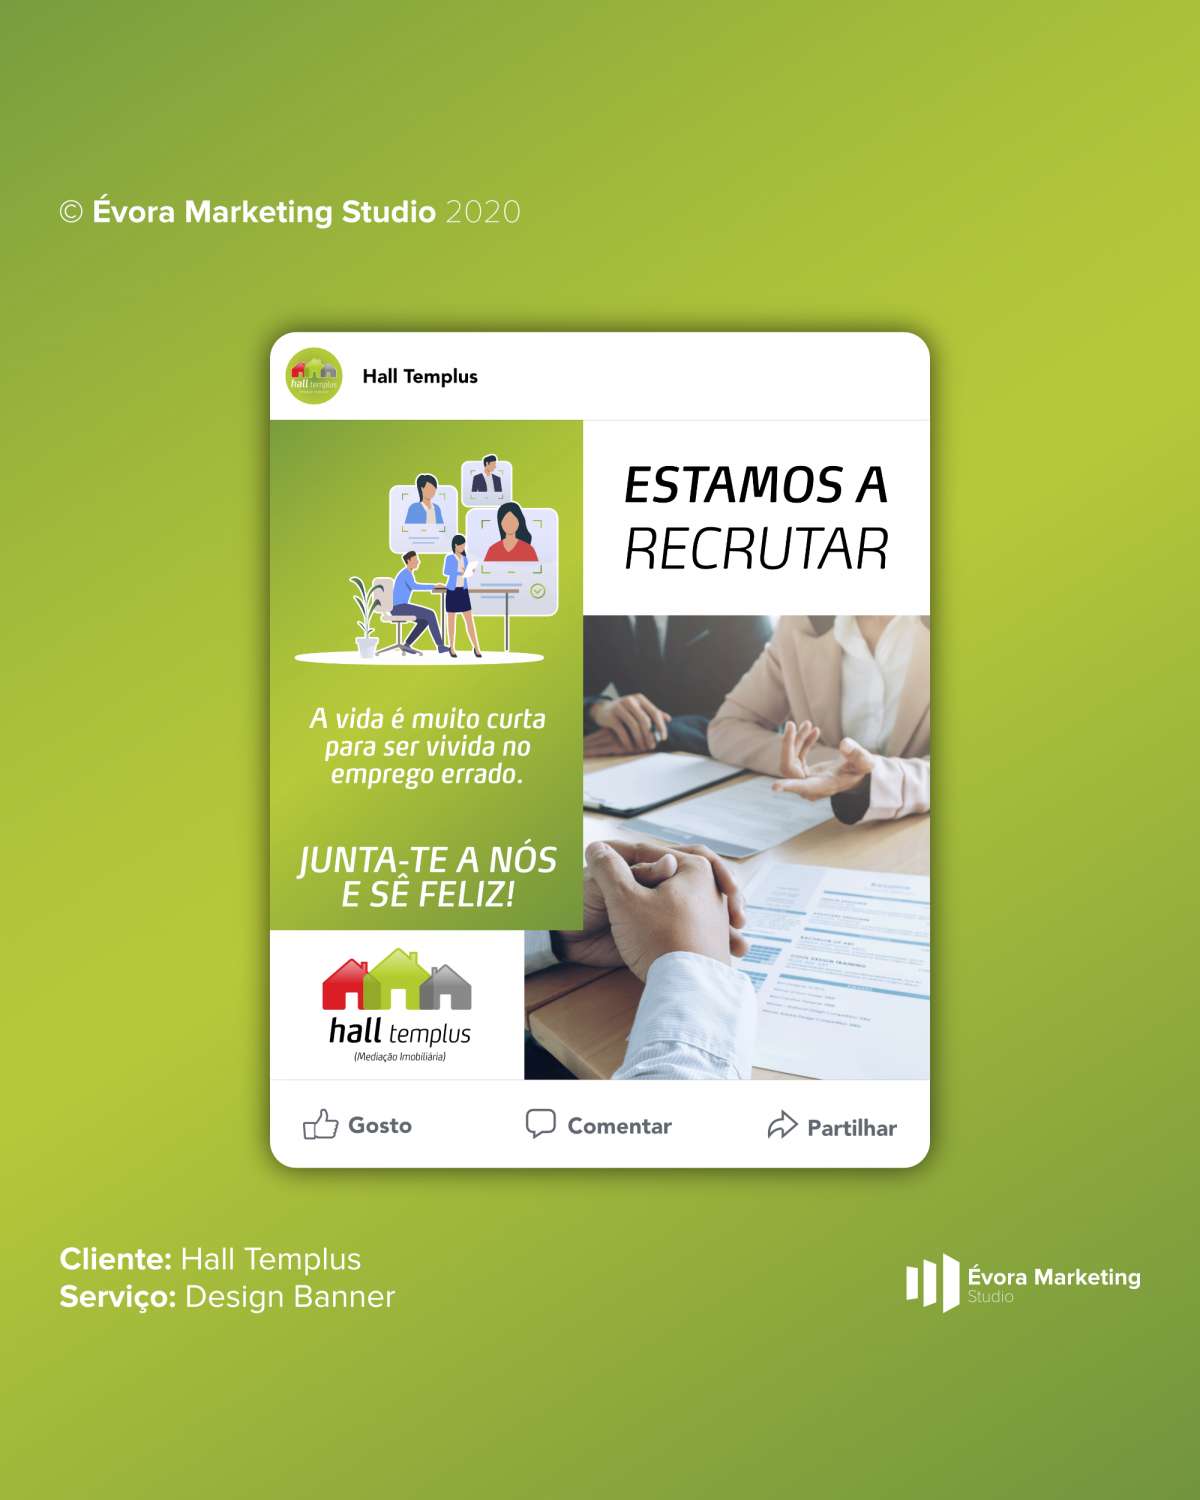 Évora Marketing Studio - Évora - E-commerce